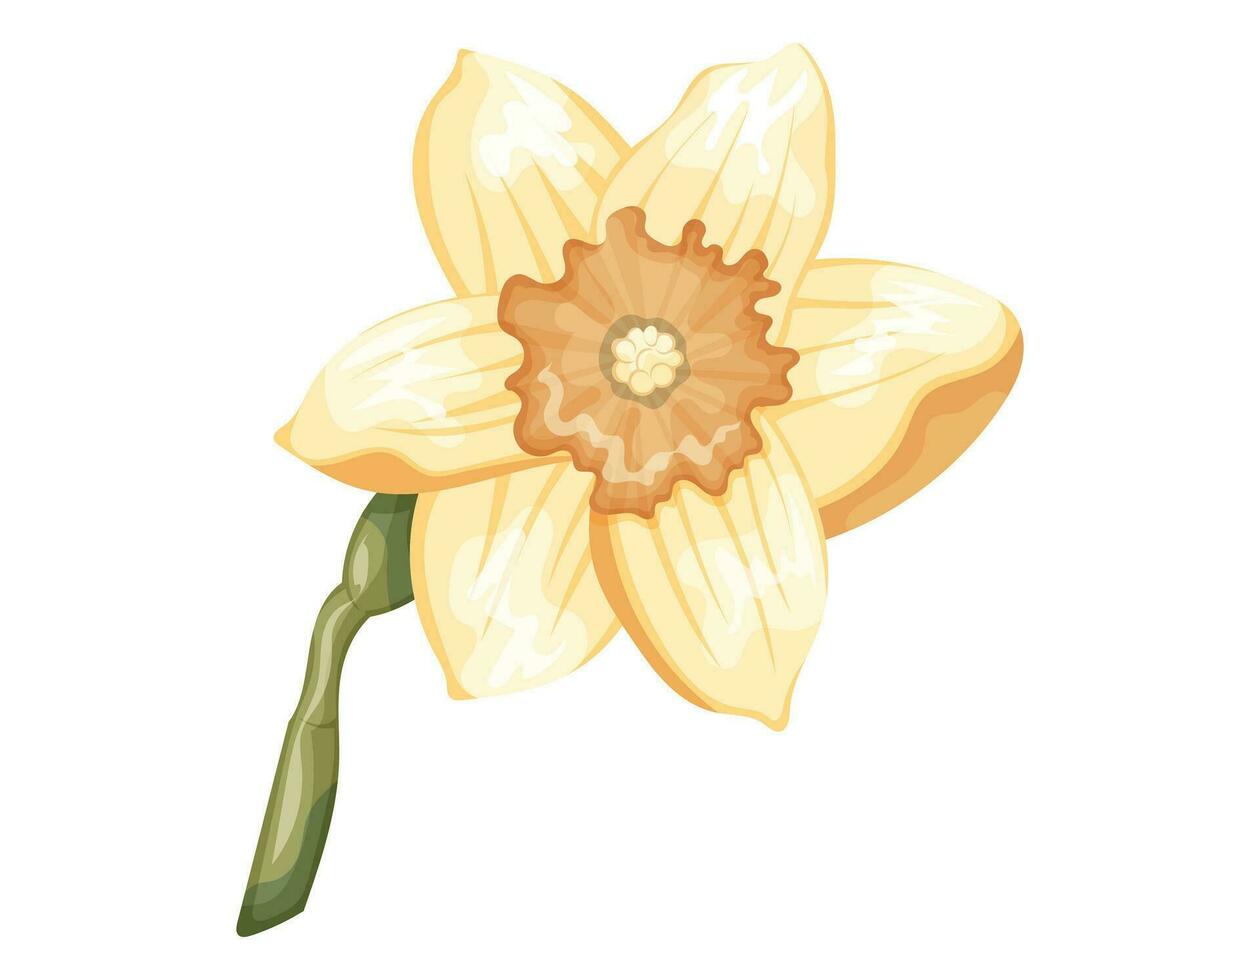 en blomstrande knopp av en gul påsklilja med kronblad på en stam. vektor isolerat tecknad serie blomma.